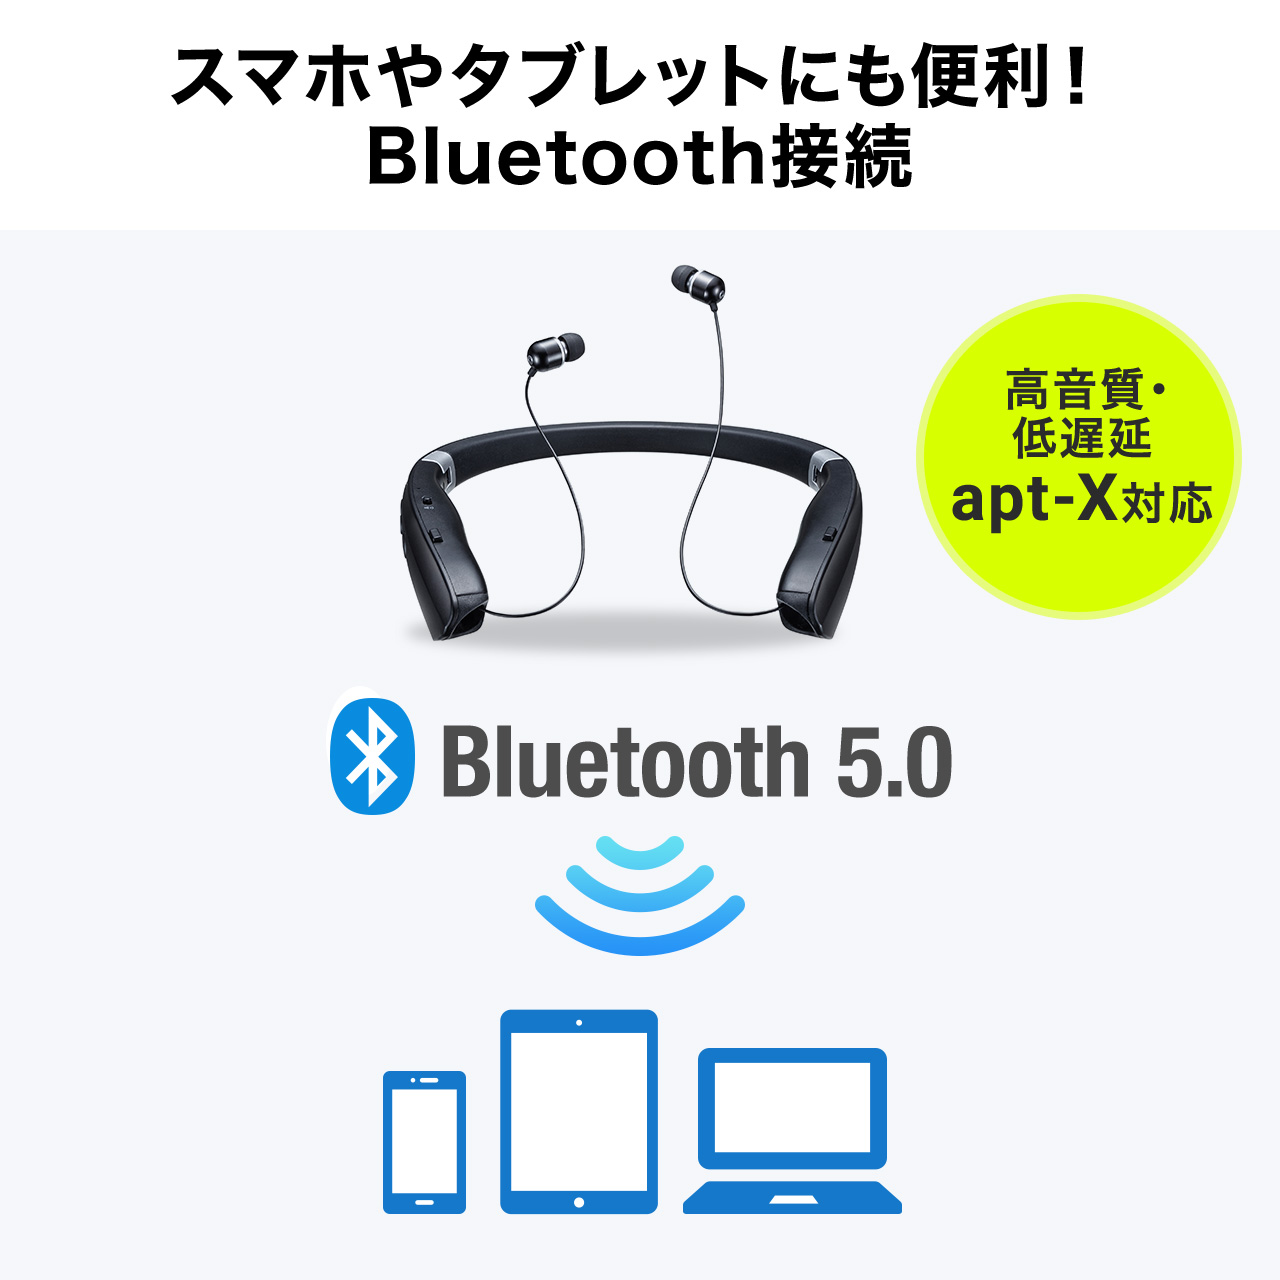 ܂肽ݎ BluetoothlbNXs[J[ Sw  Czt y apt-xΉ 2䓯ڑ USB webc 400-BTSH017BK